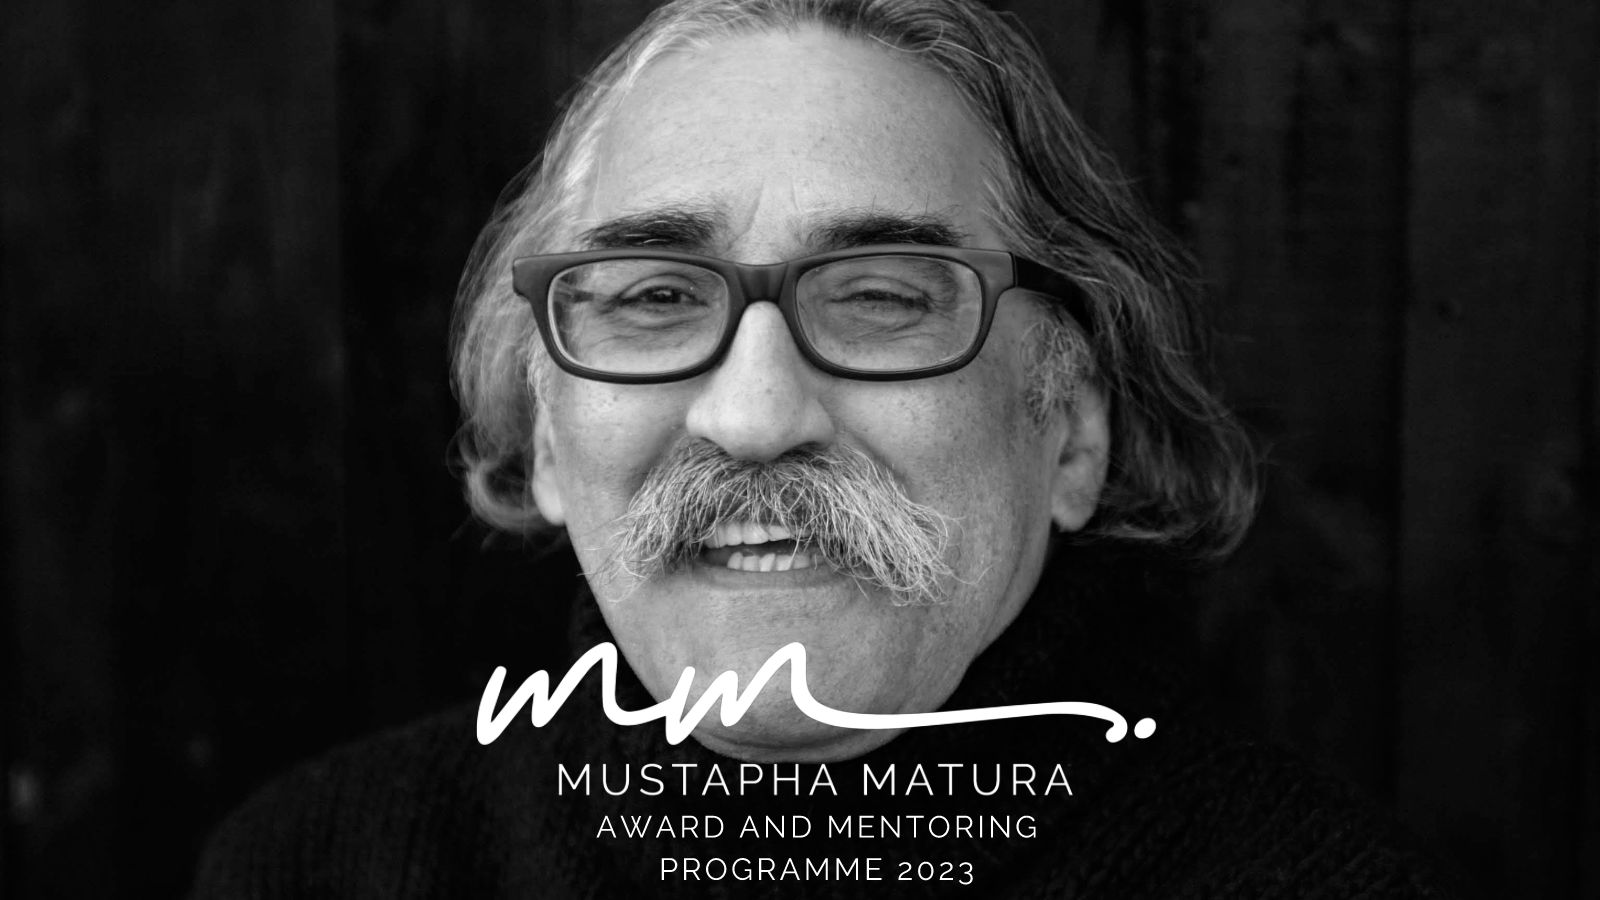 The Mustapha Matura Award and Mentoring Programme